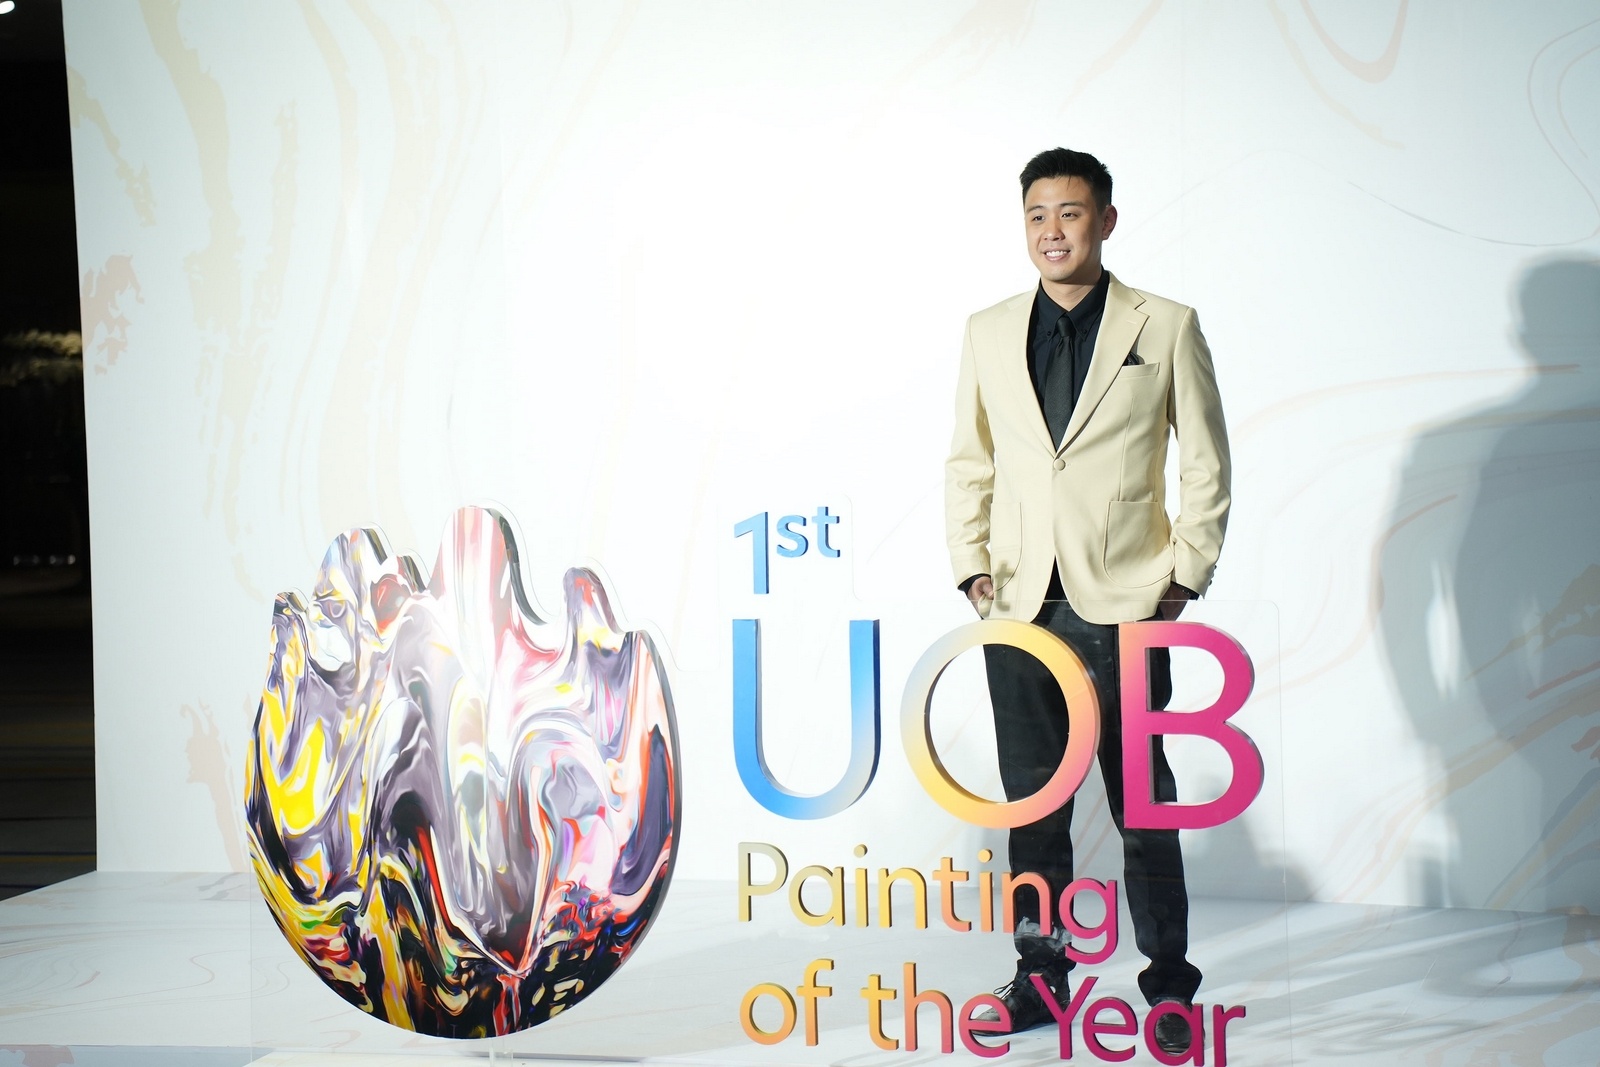 khoi dong cuoc thi uob painting of the year lan dau tien tai viet nam